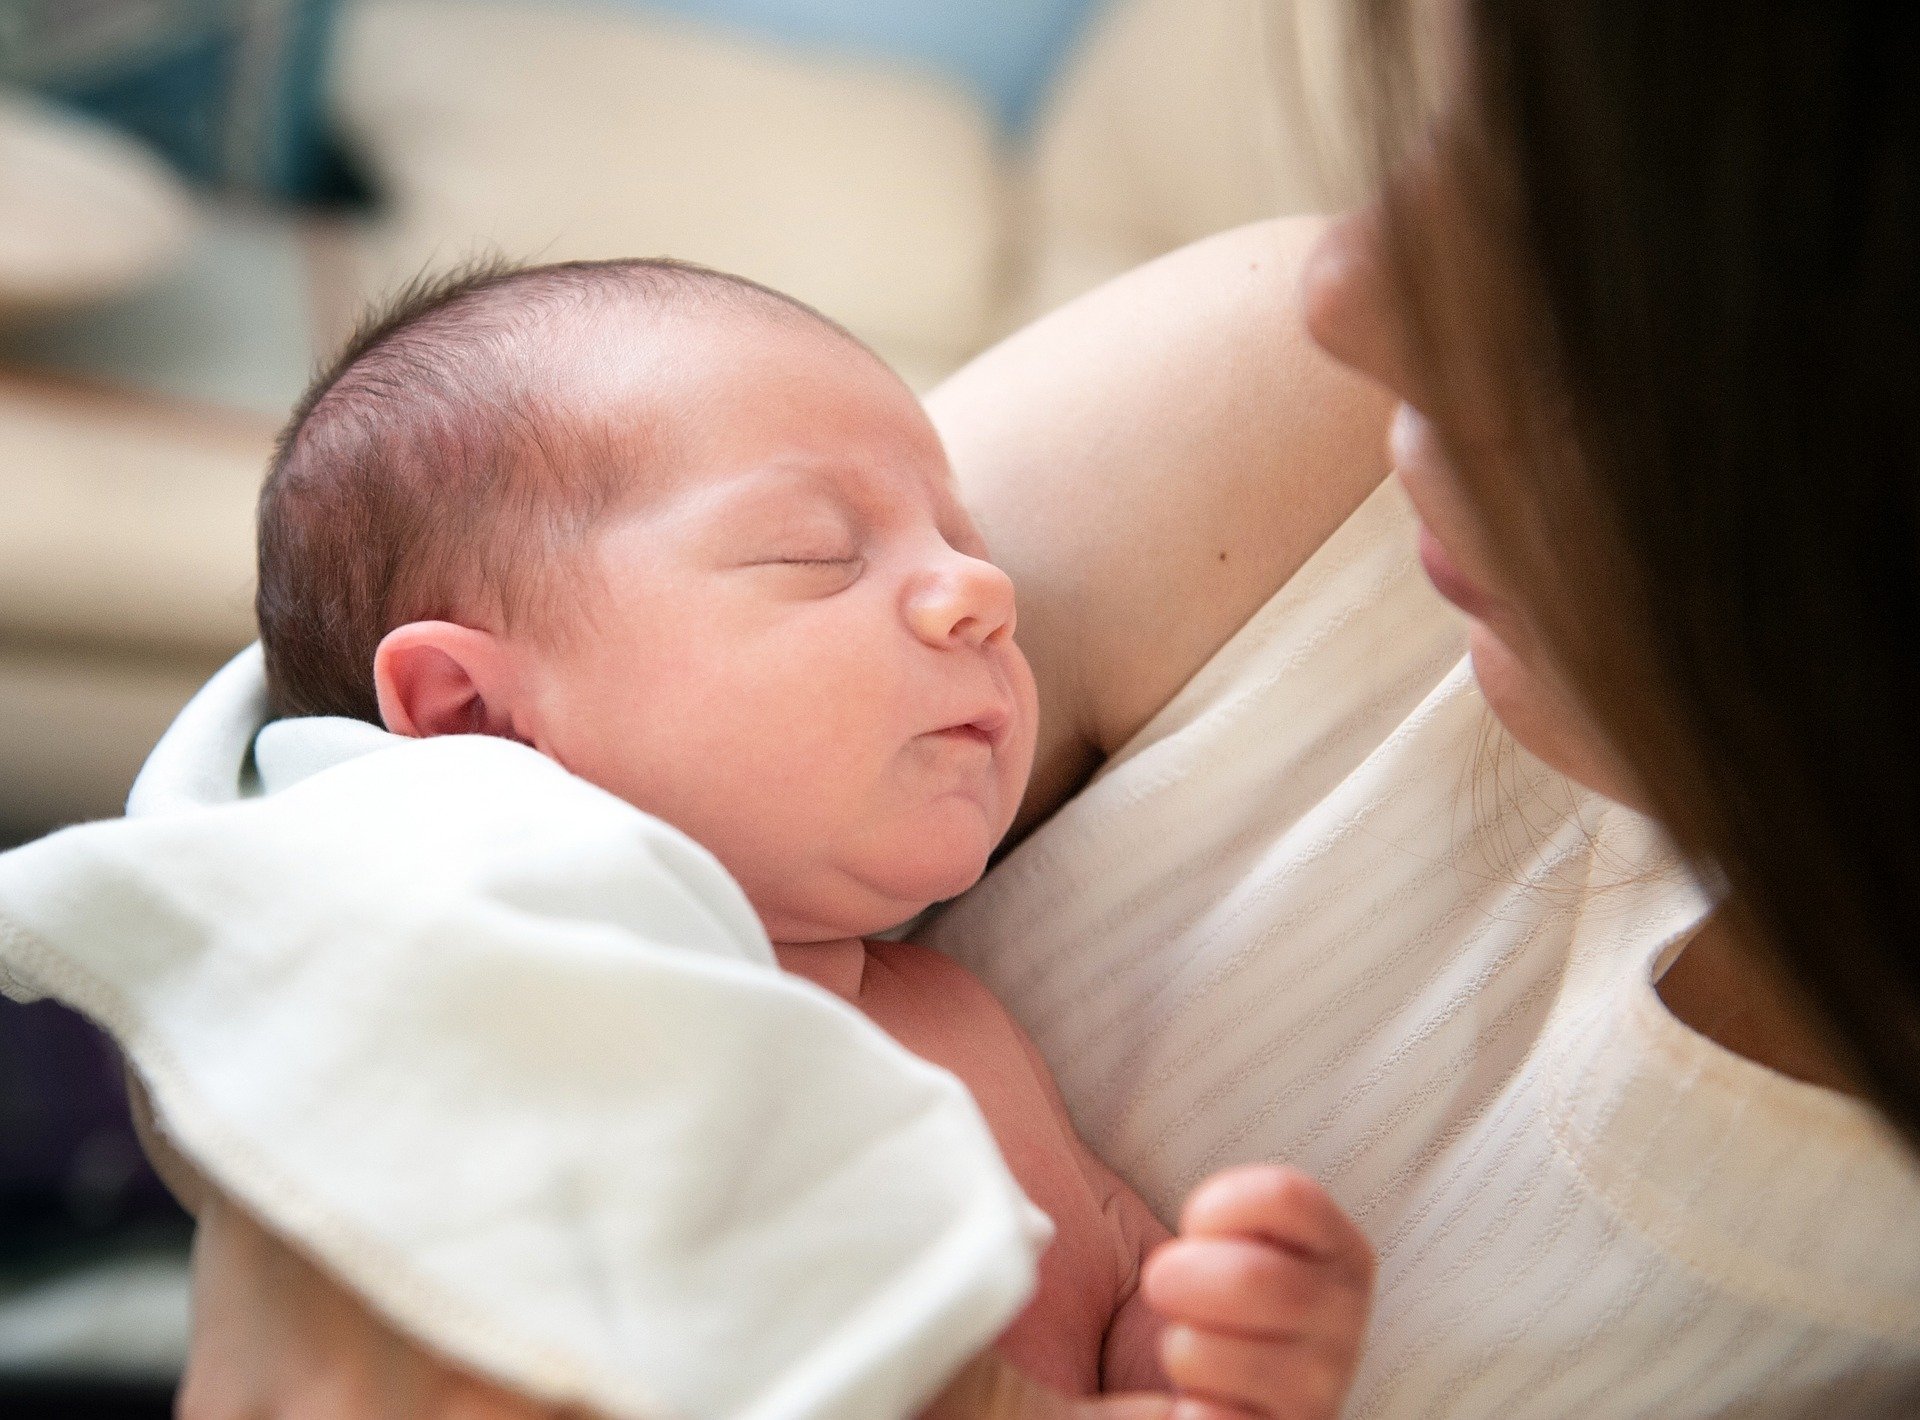 V porodnici novorozenec překvapil rodiče i lékaře! Jak?